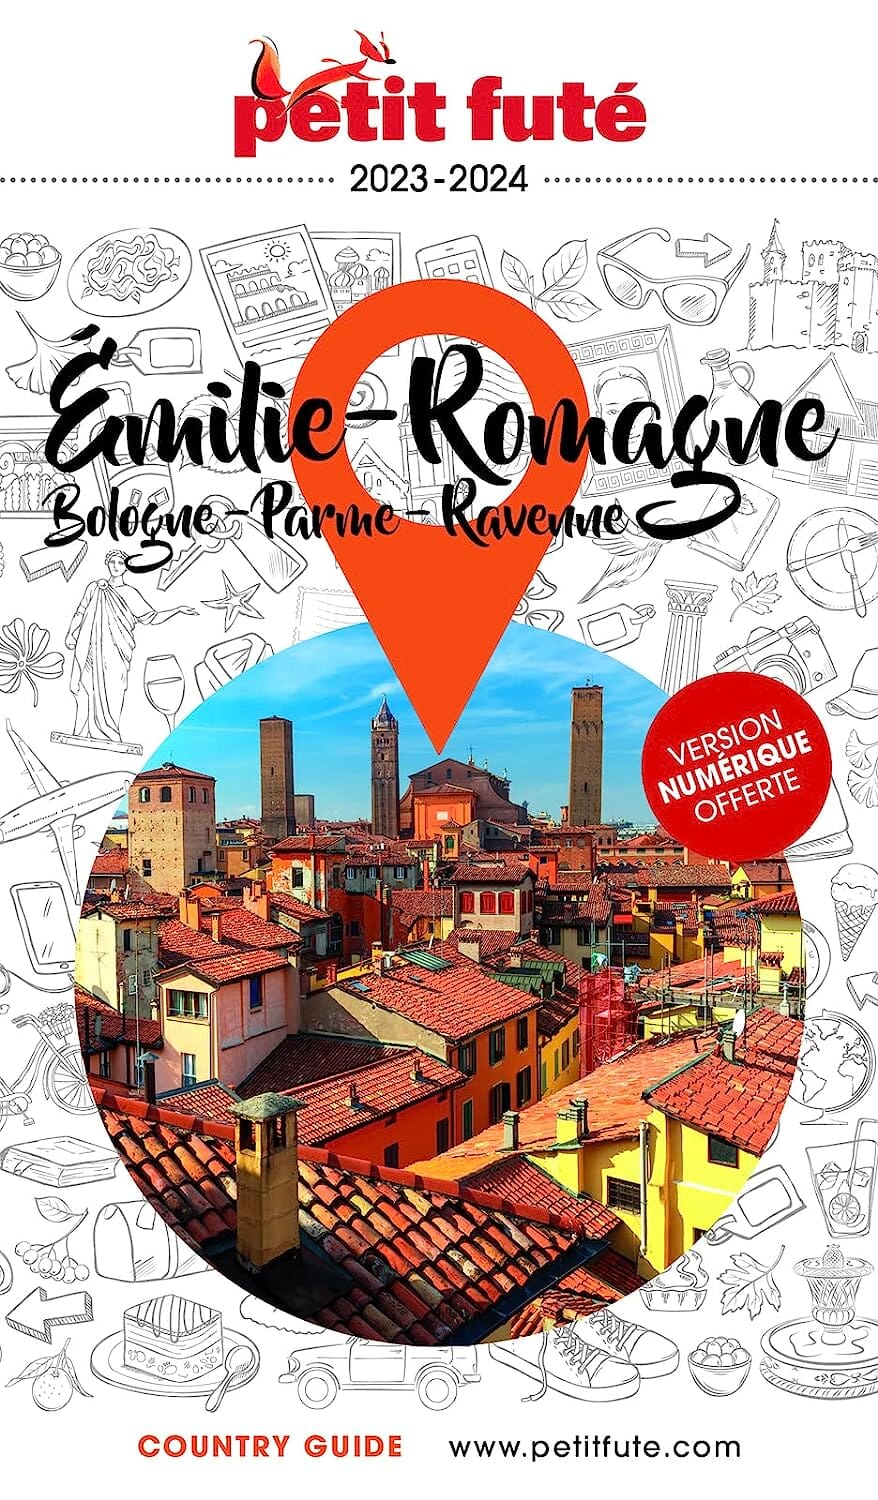 Guide de voyage - Emilie-Romagne, Bologne, Parme, Ravenne 2023/24 | Petit Futé guide de voyage Petit Futé 